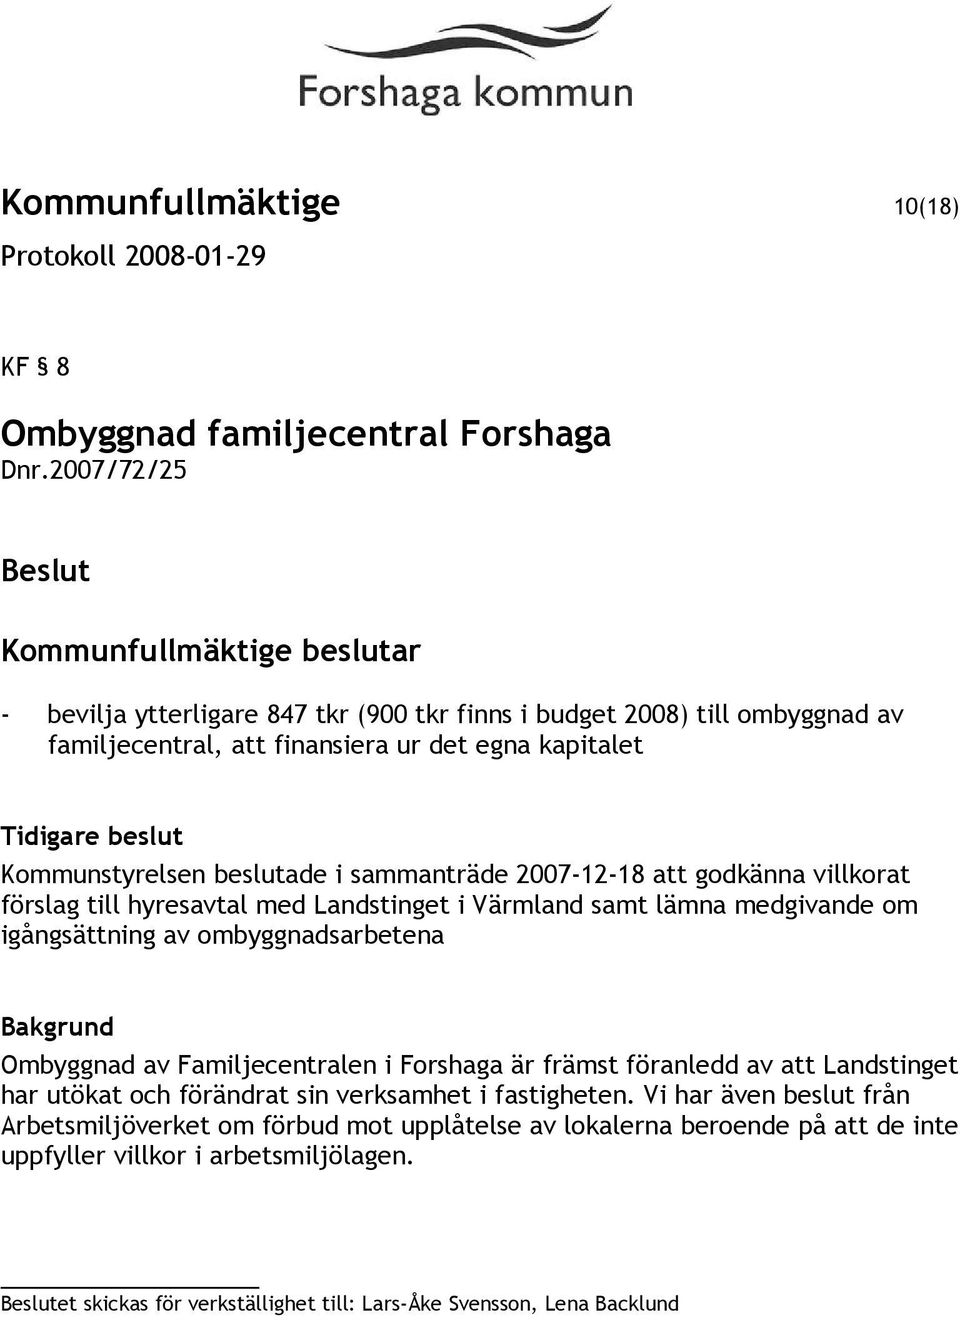 sammanträde 2007-12-18 att godkänna villkorat förslag till hyresavtal med Landstinget i Värmland samt lämna medgivande om igångsättning av ombyggnadsarbetena Ombyggnad av Familjecentralen i